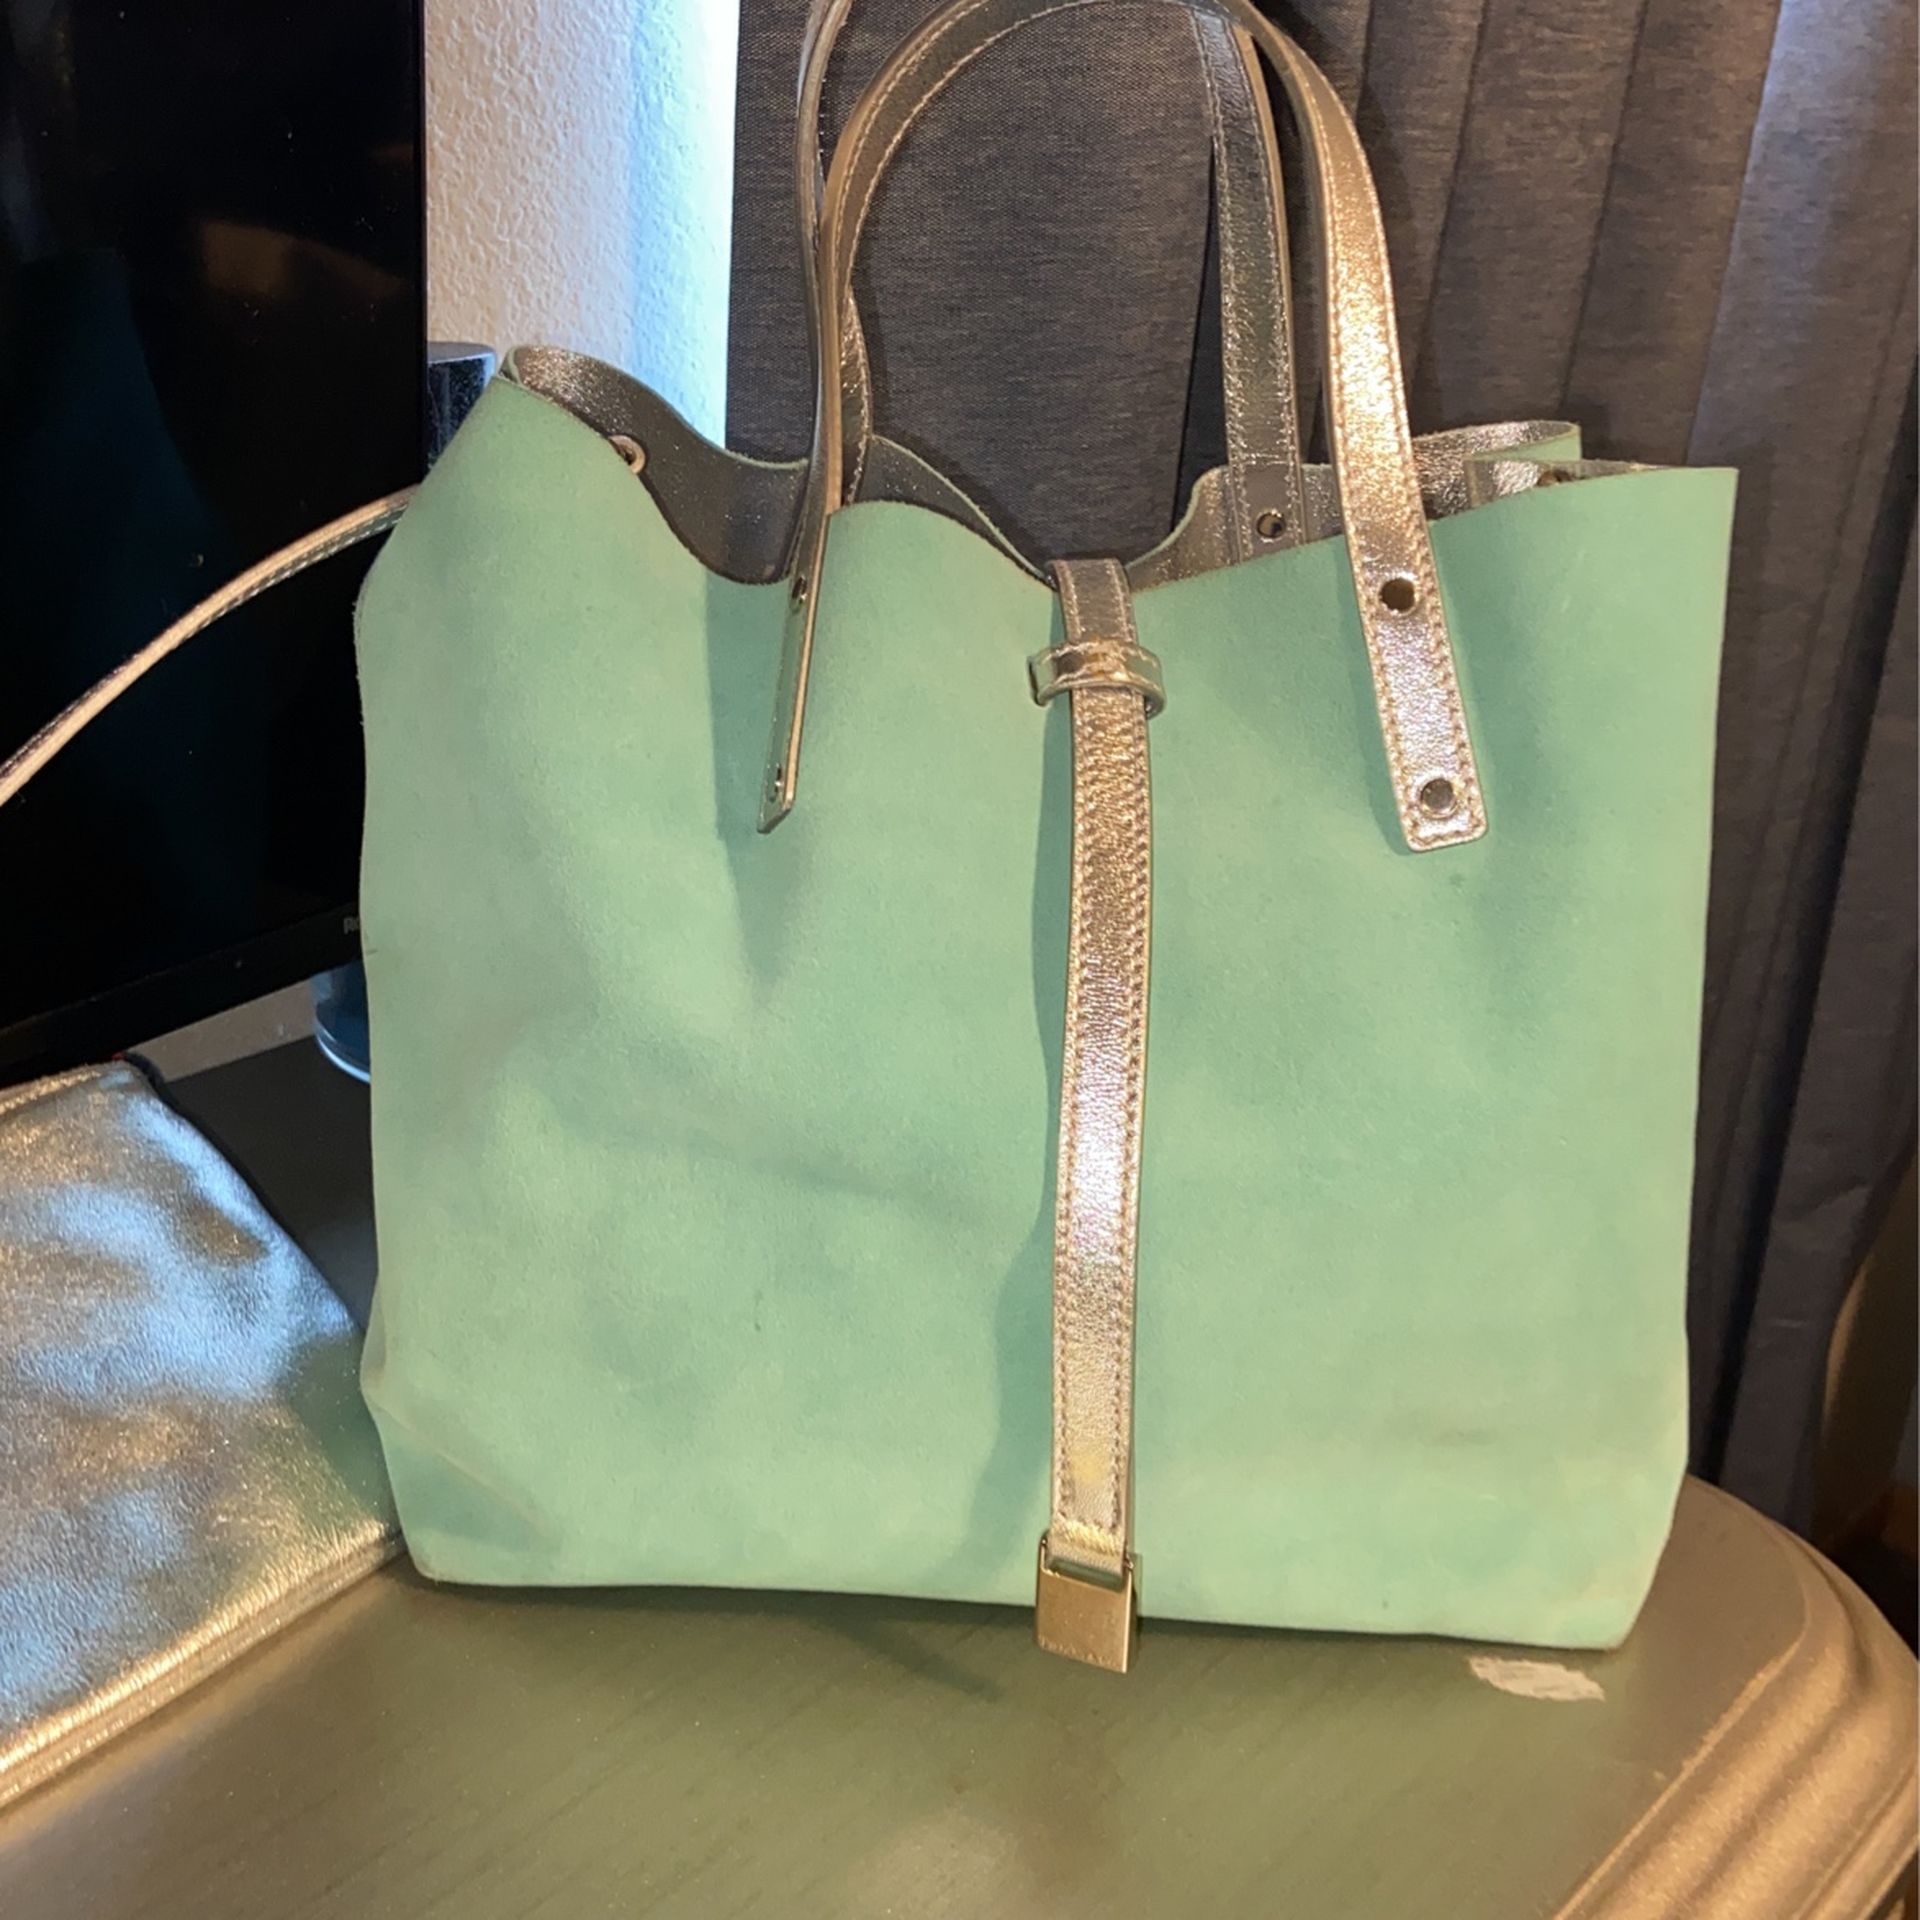 Tiffany Handbag